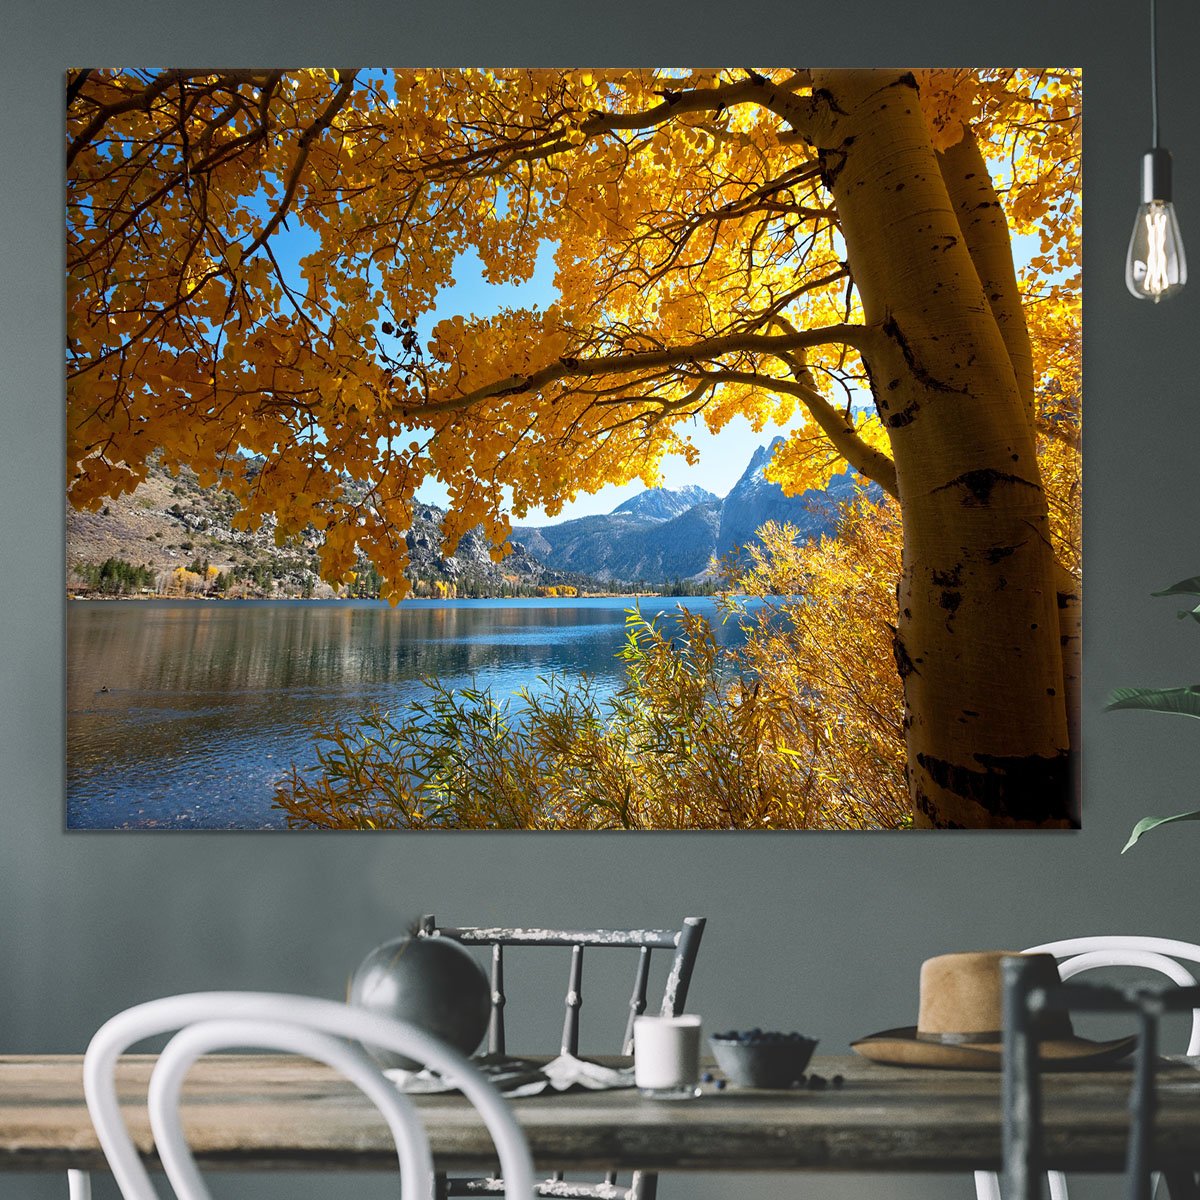 Autumn mountain lake Canvas Print or Poster